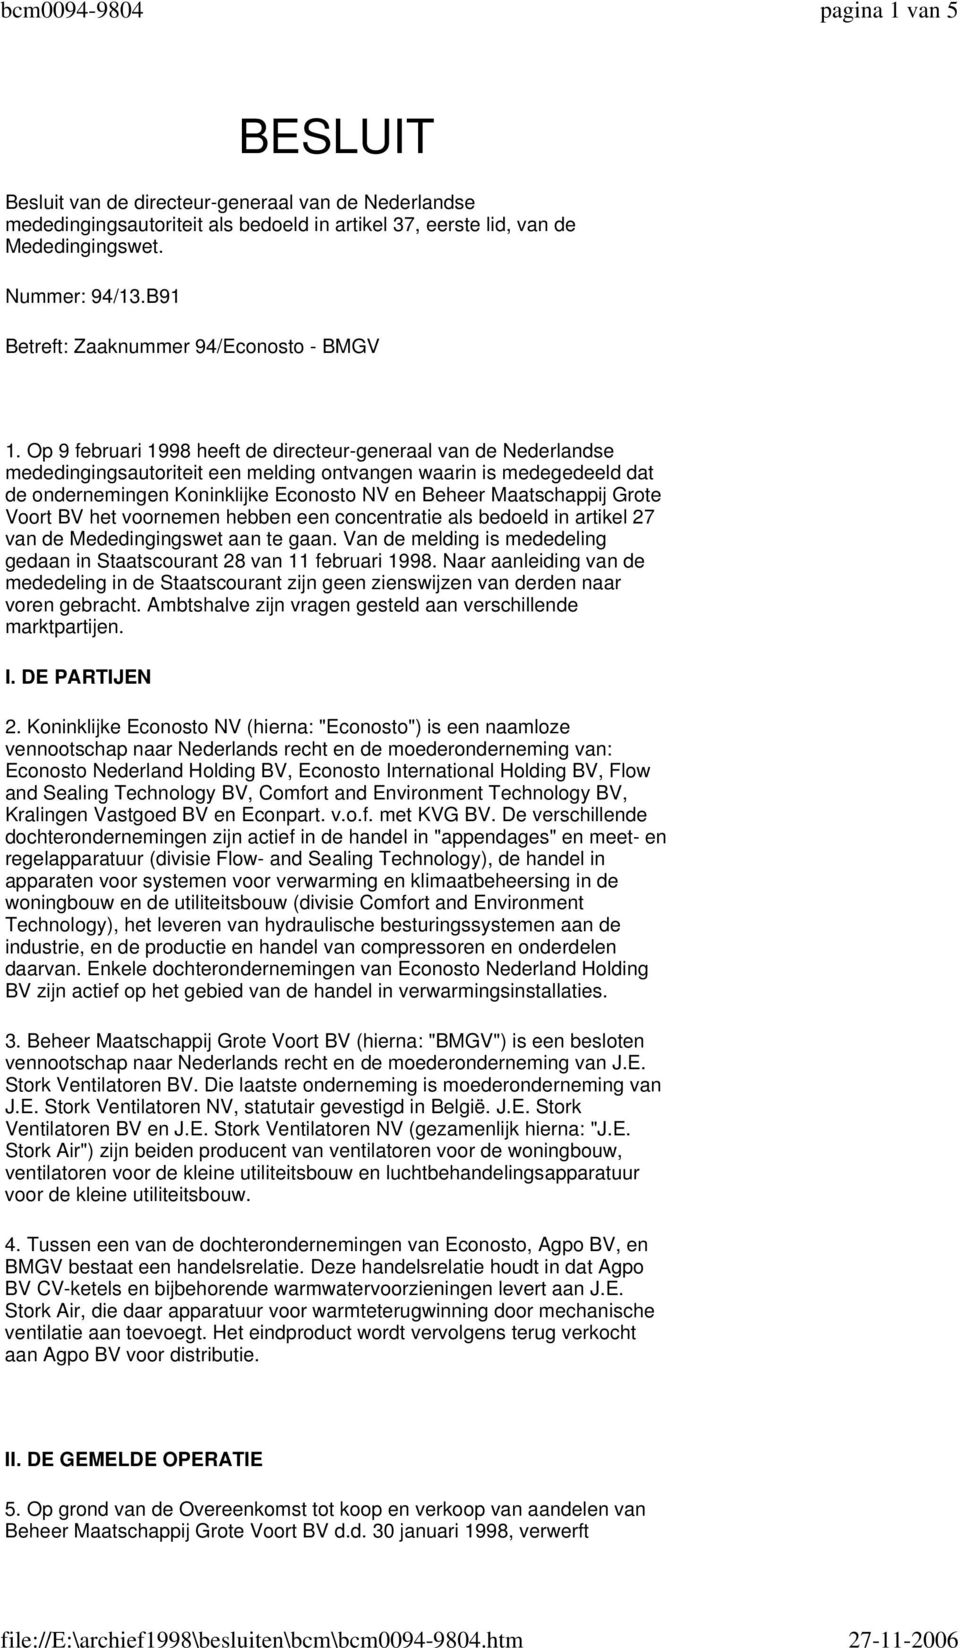 Op 9 februari 1998 heeft de directeur-generaal van de Nederlandse mededingingsautoriteit een melding ontvangen waarin is medegedeeld dat de ondernemingen Koninklijke Econosto NV en Beheer